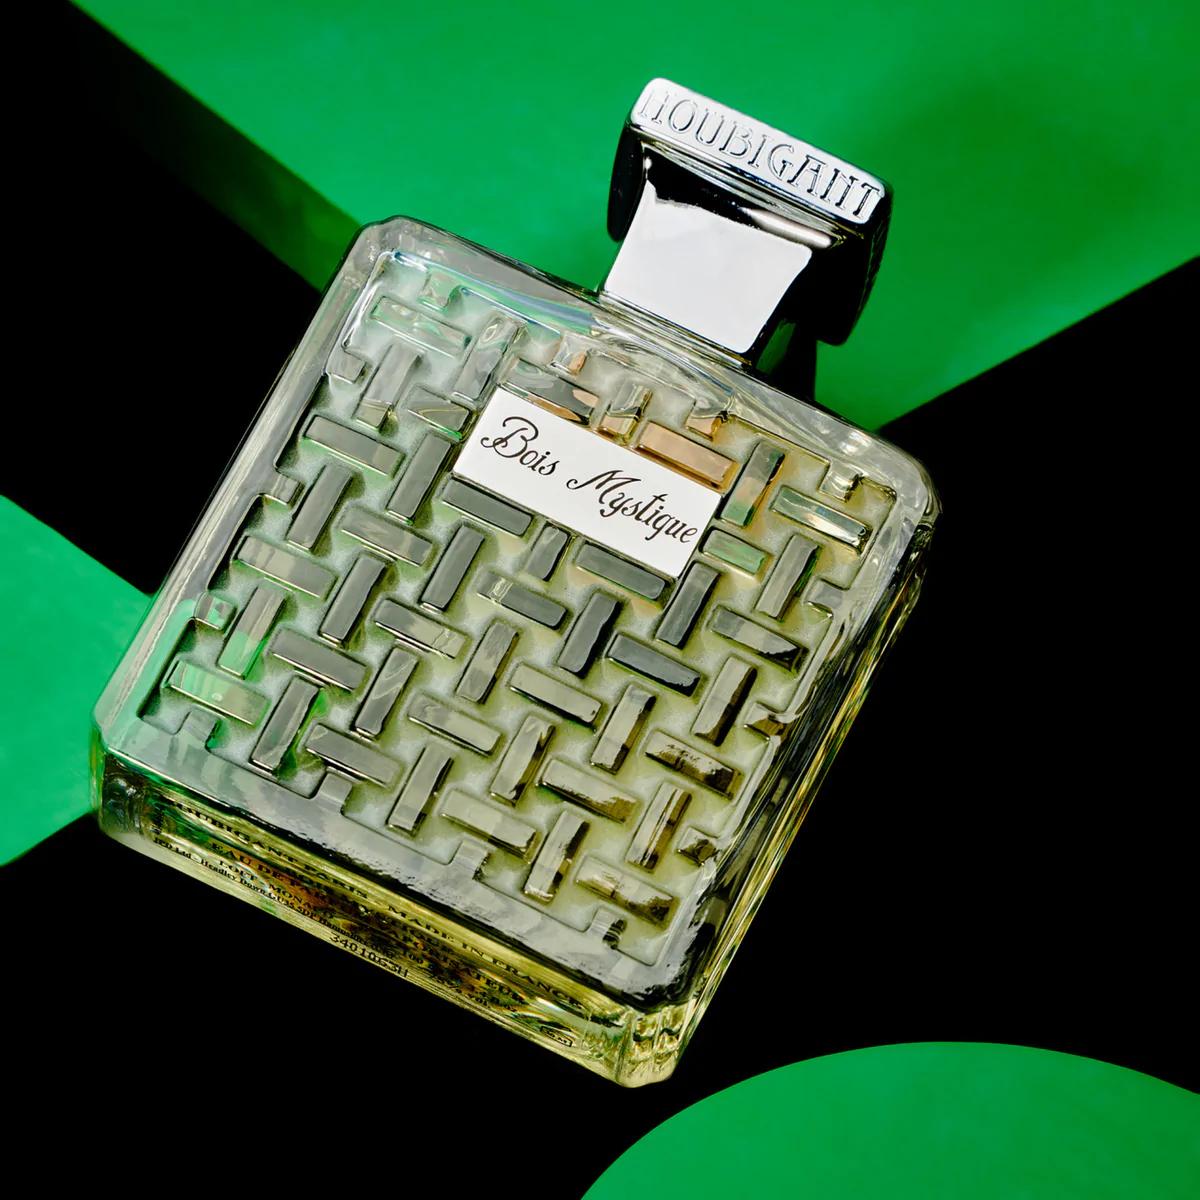 Houbigant - Bois Mystique ambiance 100 ml eau de parfum | Perfume Lounge